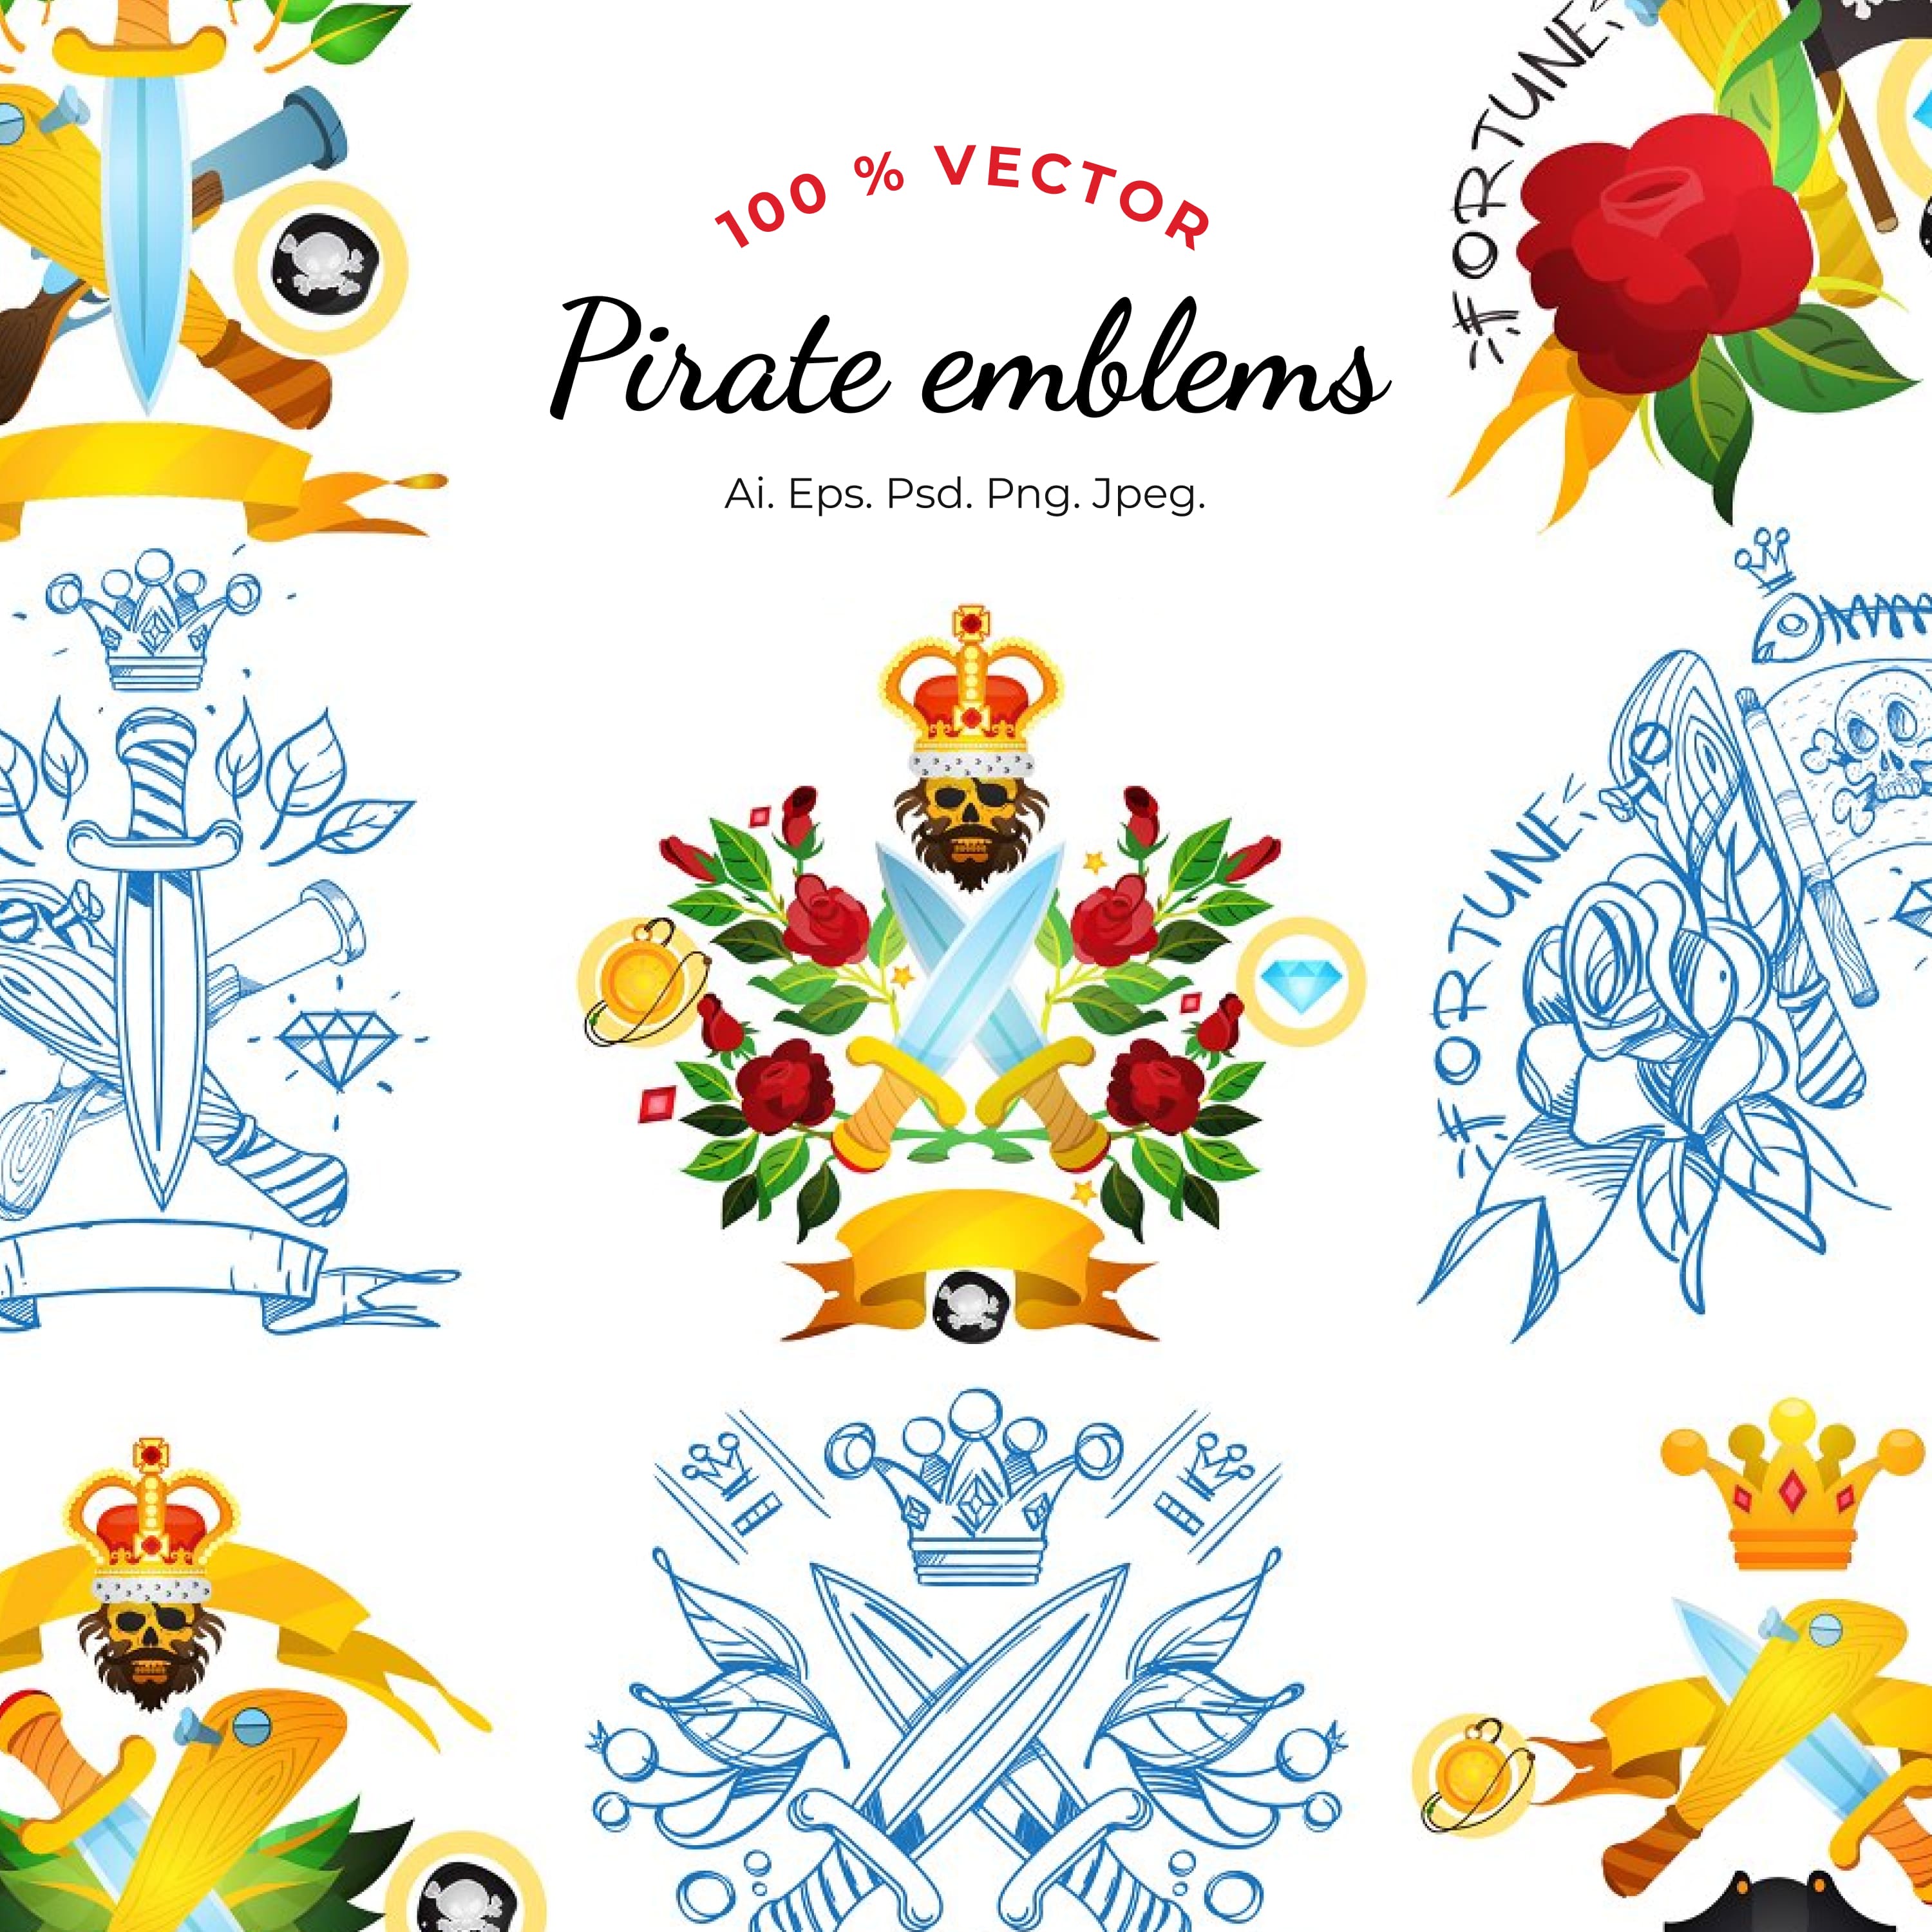 Pirate emblems.